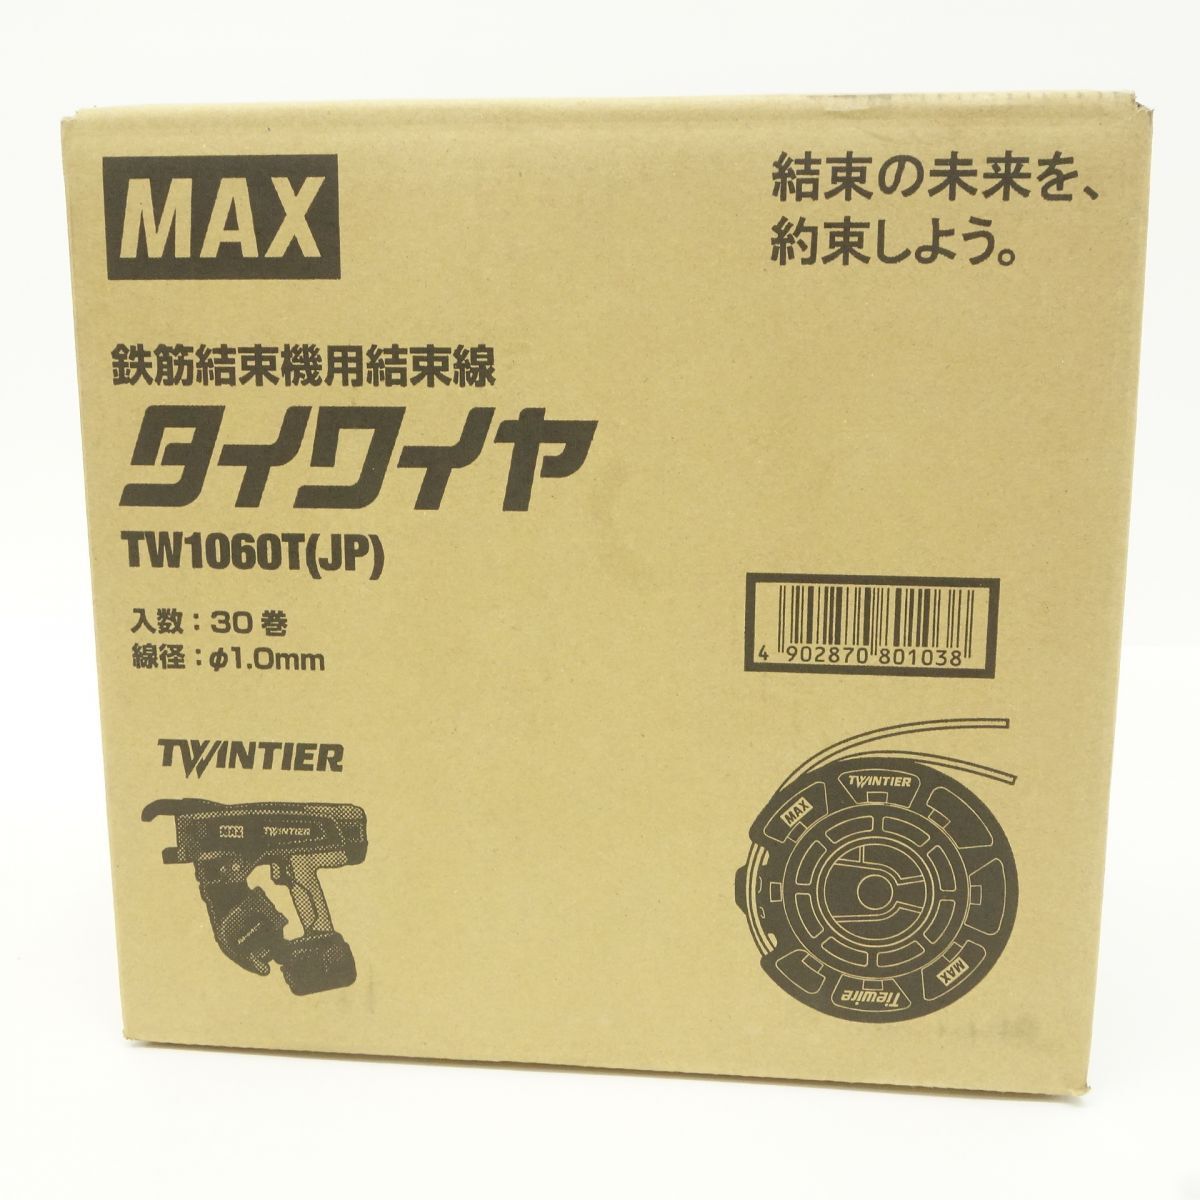 104【未開封】MAX/マックス タイワイヤ RB-440T用 なまし鉄線 30巻入 鉄筋結束機用結束線 TW1060T(JP)